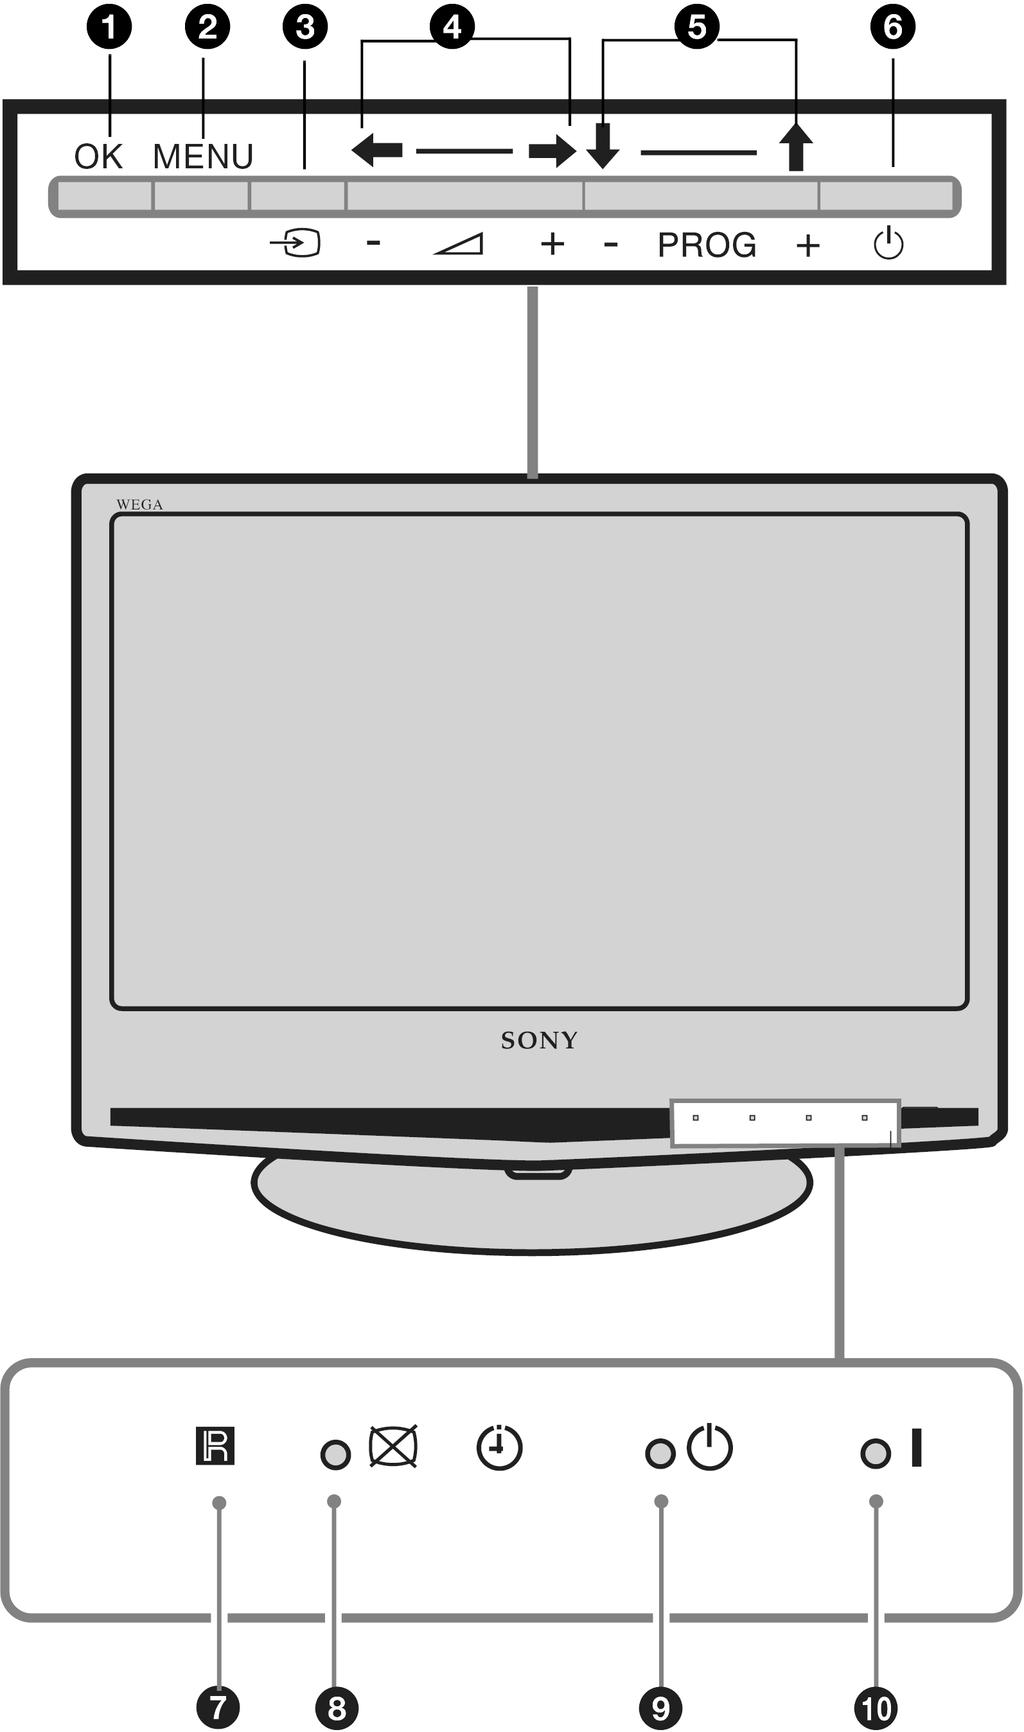 Pregled tipaka i indikatora na LCD TV prijemniku A n B o (stranica 17) C t Odabir izvora ulaznog signala (stranica 16) Odabir izvora ulaznog signala opreme spojene na priključnice TV prijemnika.